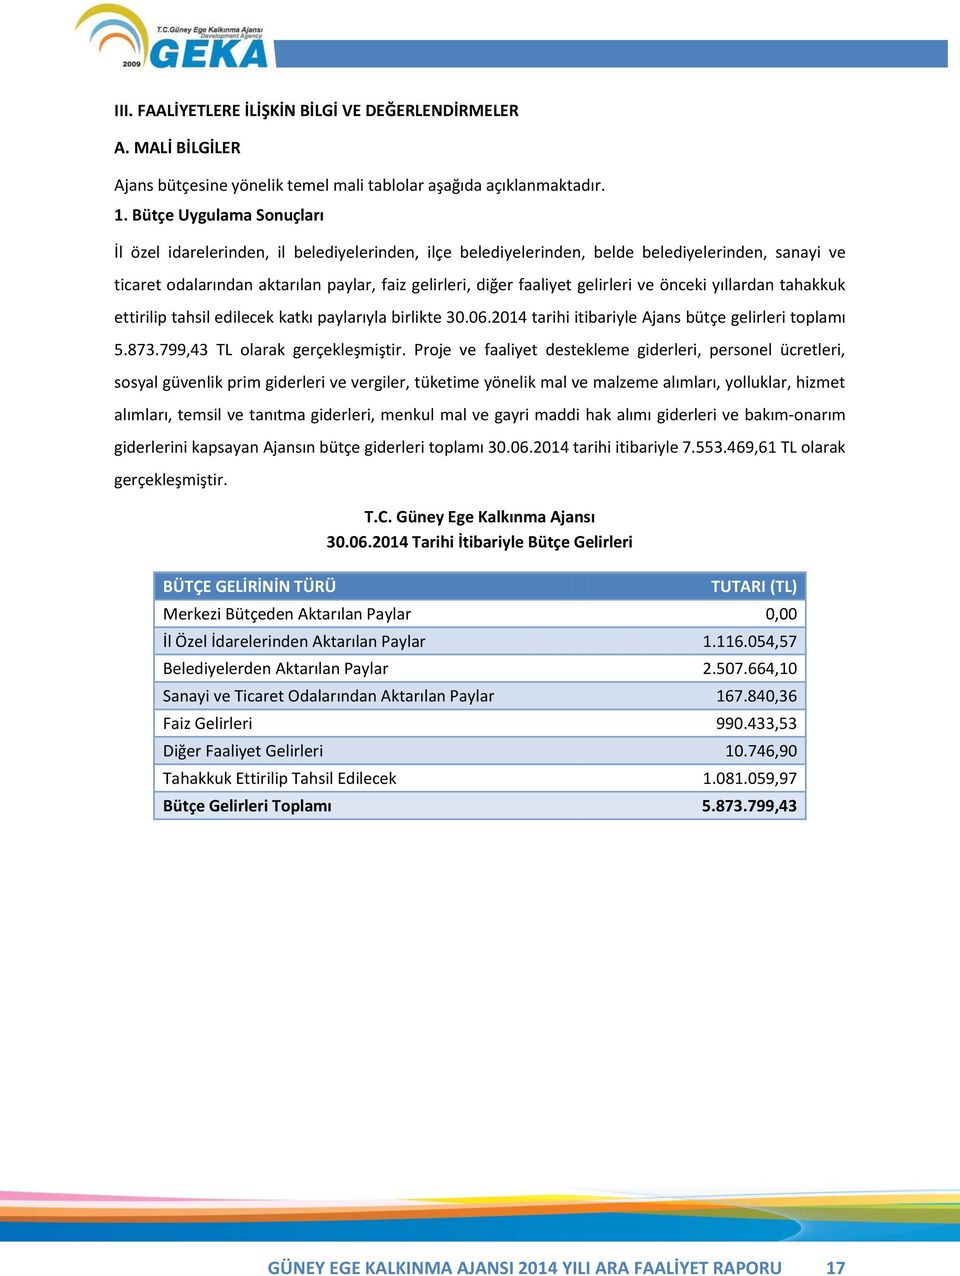 gelirleri ve önceki yıllardan tahakkuk ettirilip tahsil edilecek katkı paylarıyla birlikte 30.06.2014 tarihi itibariyle Ajans bütçe gelirleri toplamı 5.873.799,43 TL olarak gerçekleşmiştir.